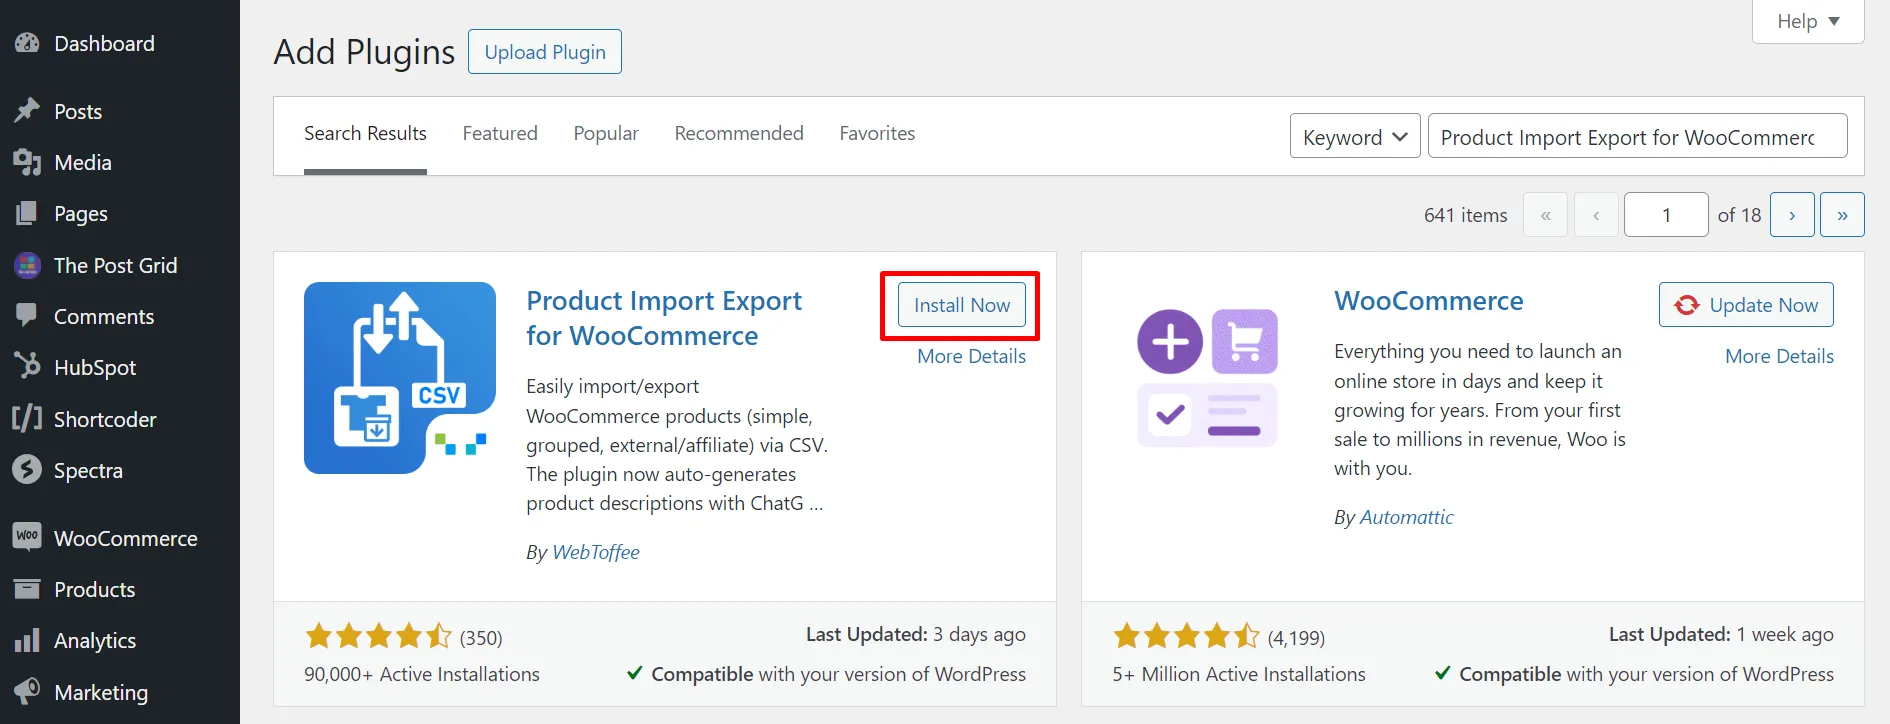 WooCommerce product import export plugin